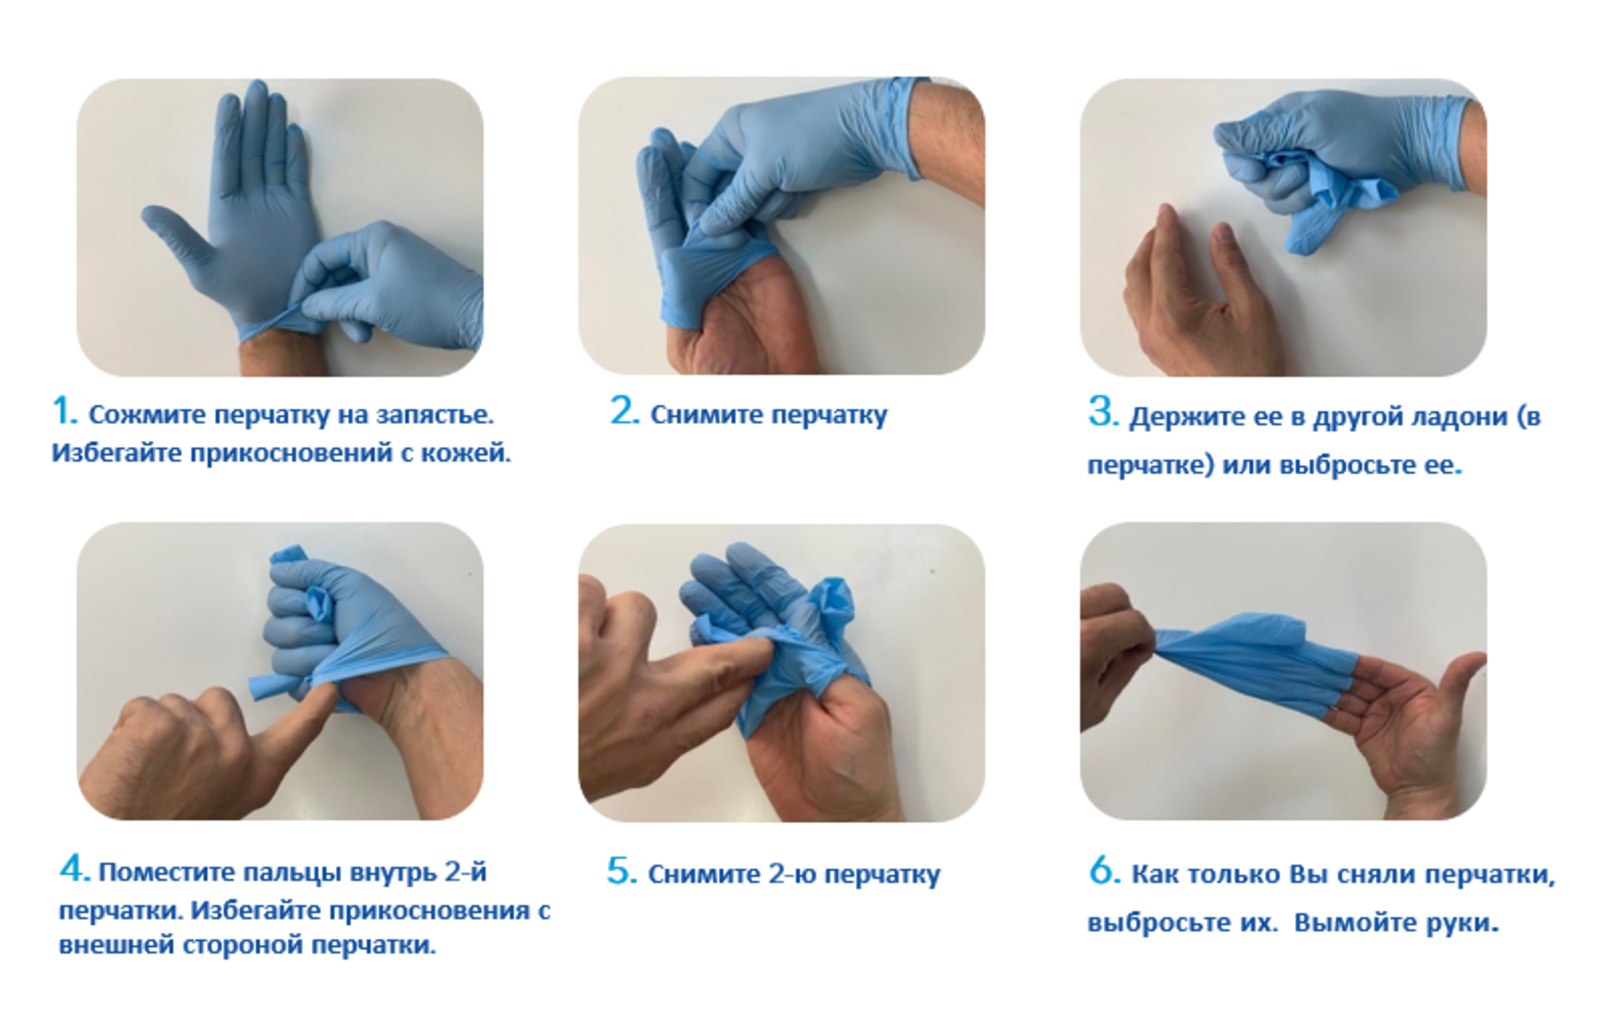 После снятия перчаток руки. Техника надевания стерильных перчаток. Алгоритм одевания и снятия перчаток медицинских. Алгоритм снимания стерильных перчаток. Правила одевания стерильных перчаток.